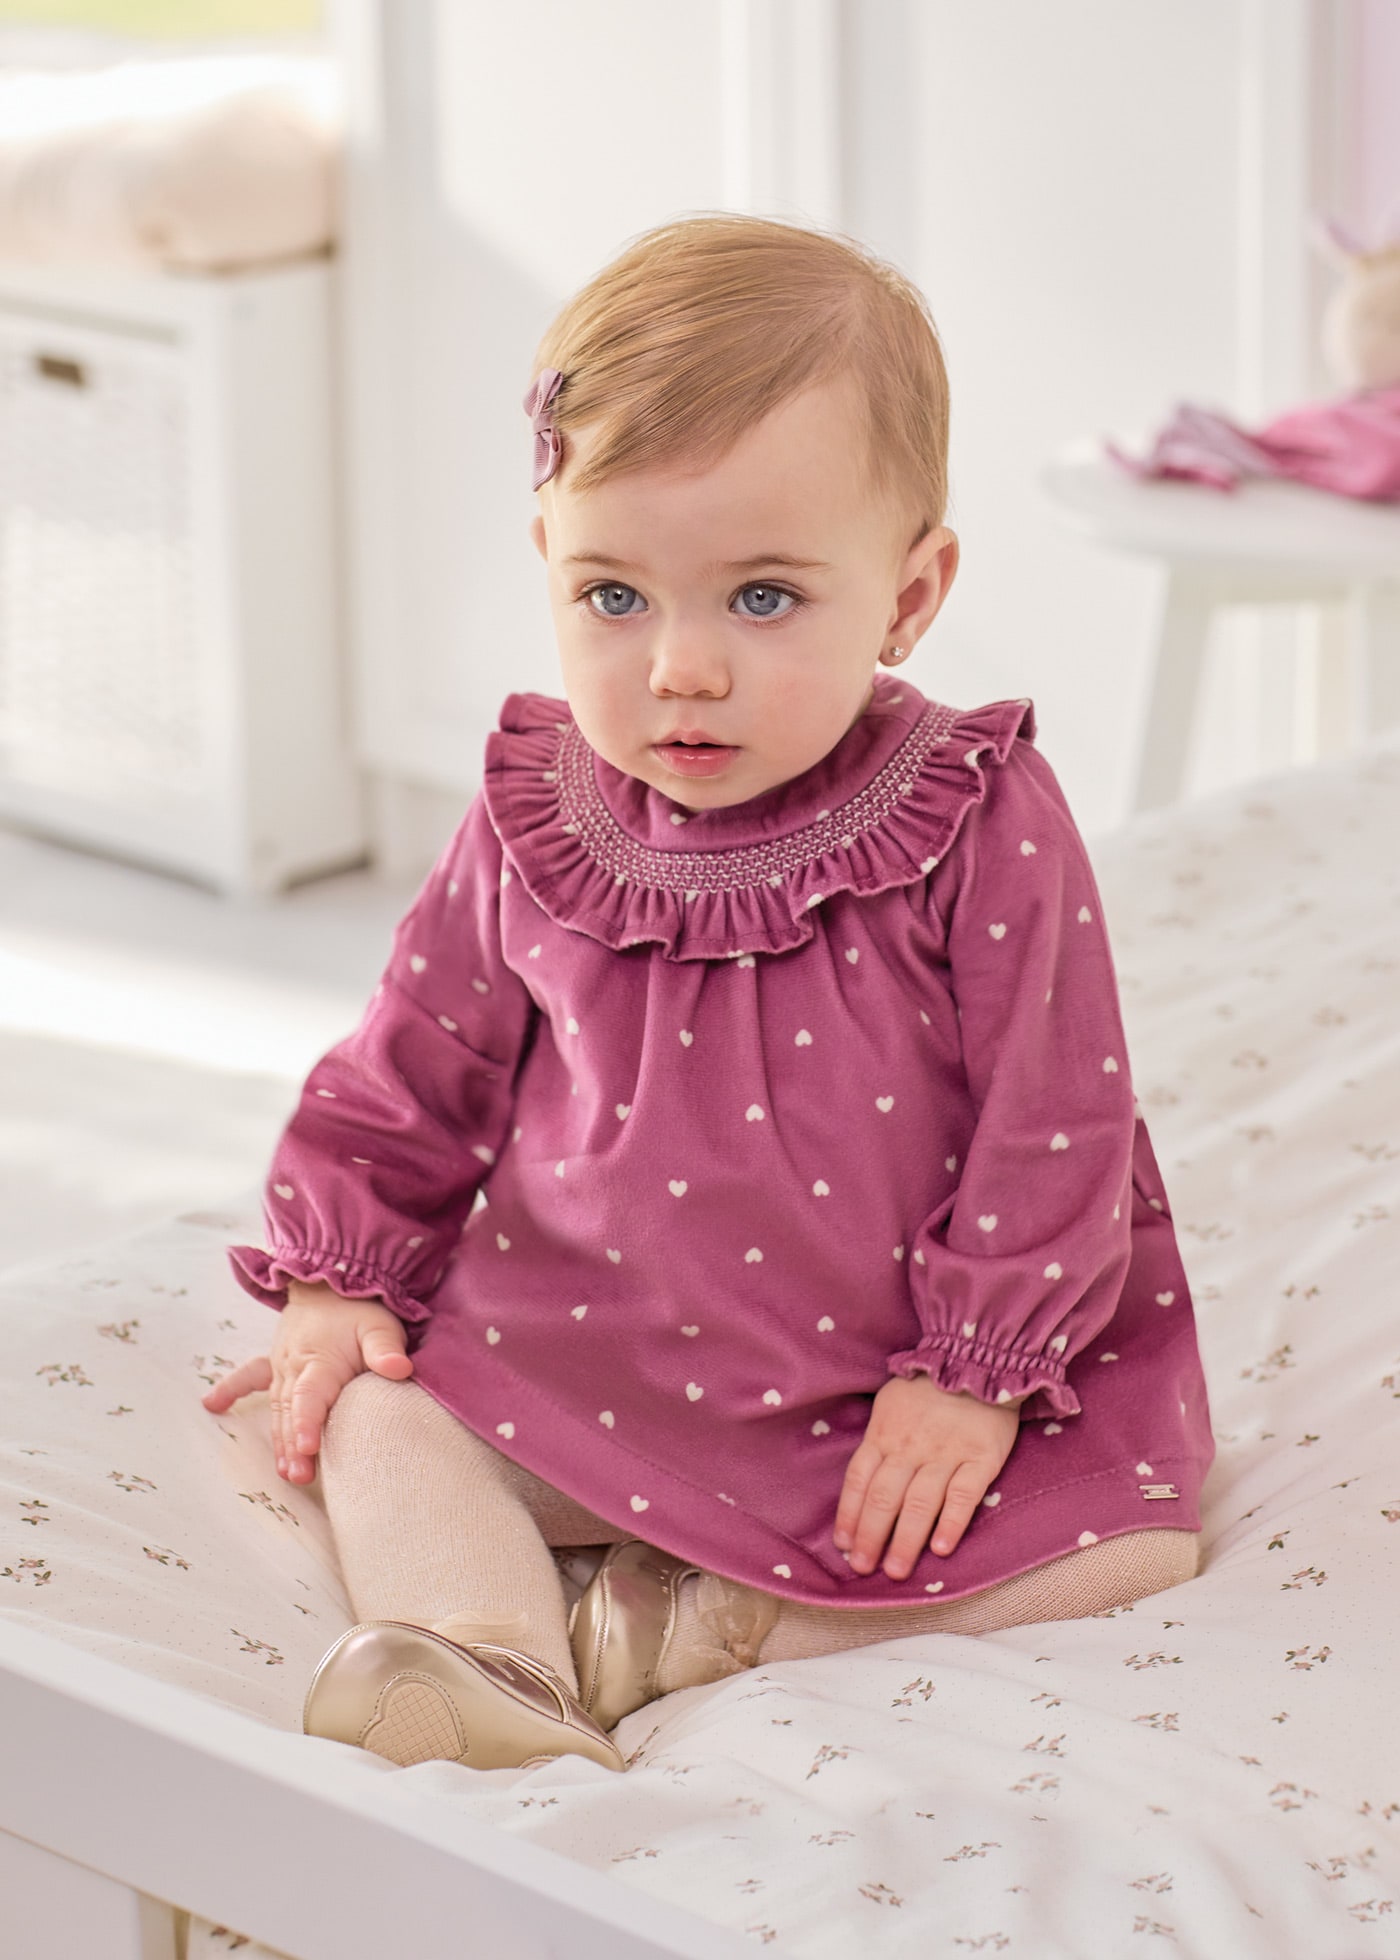 Robe de nuit nouée, Mebie Baby, 0-3 mois - Boutique L'Enfantillon